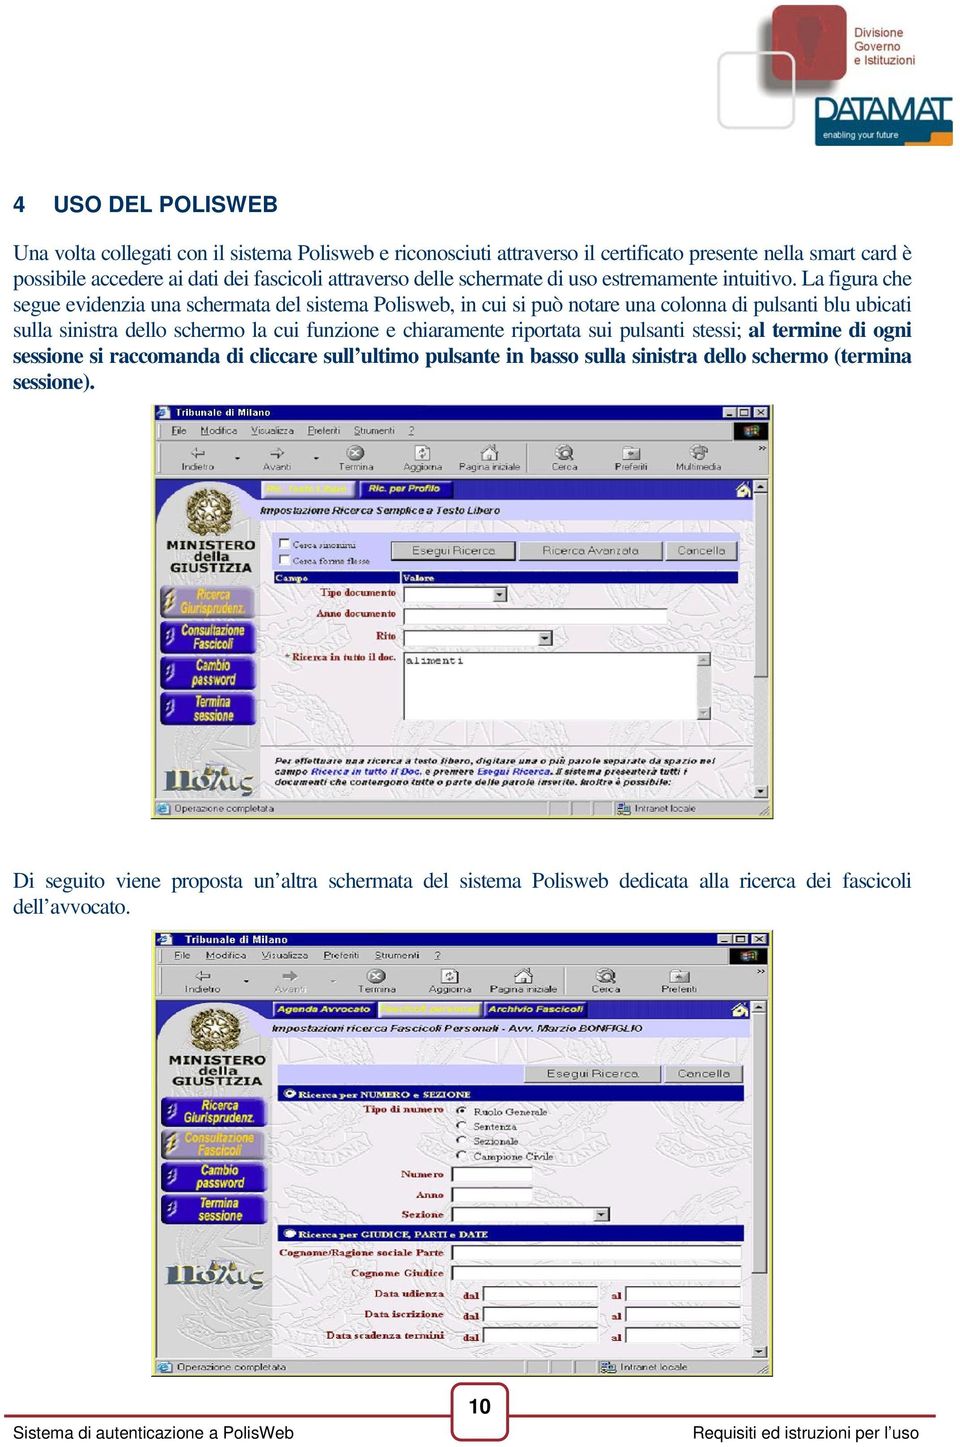 La figura che segue evidenzia una schermata del sistema Polisweb, in cui si può notare una colonna di pulsanti blu ubicati sulla sinistra dello schermo la cui funzione e